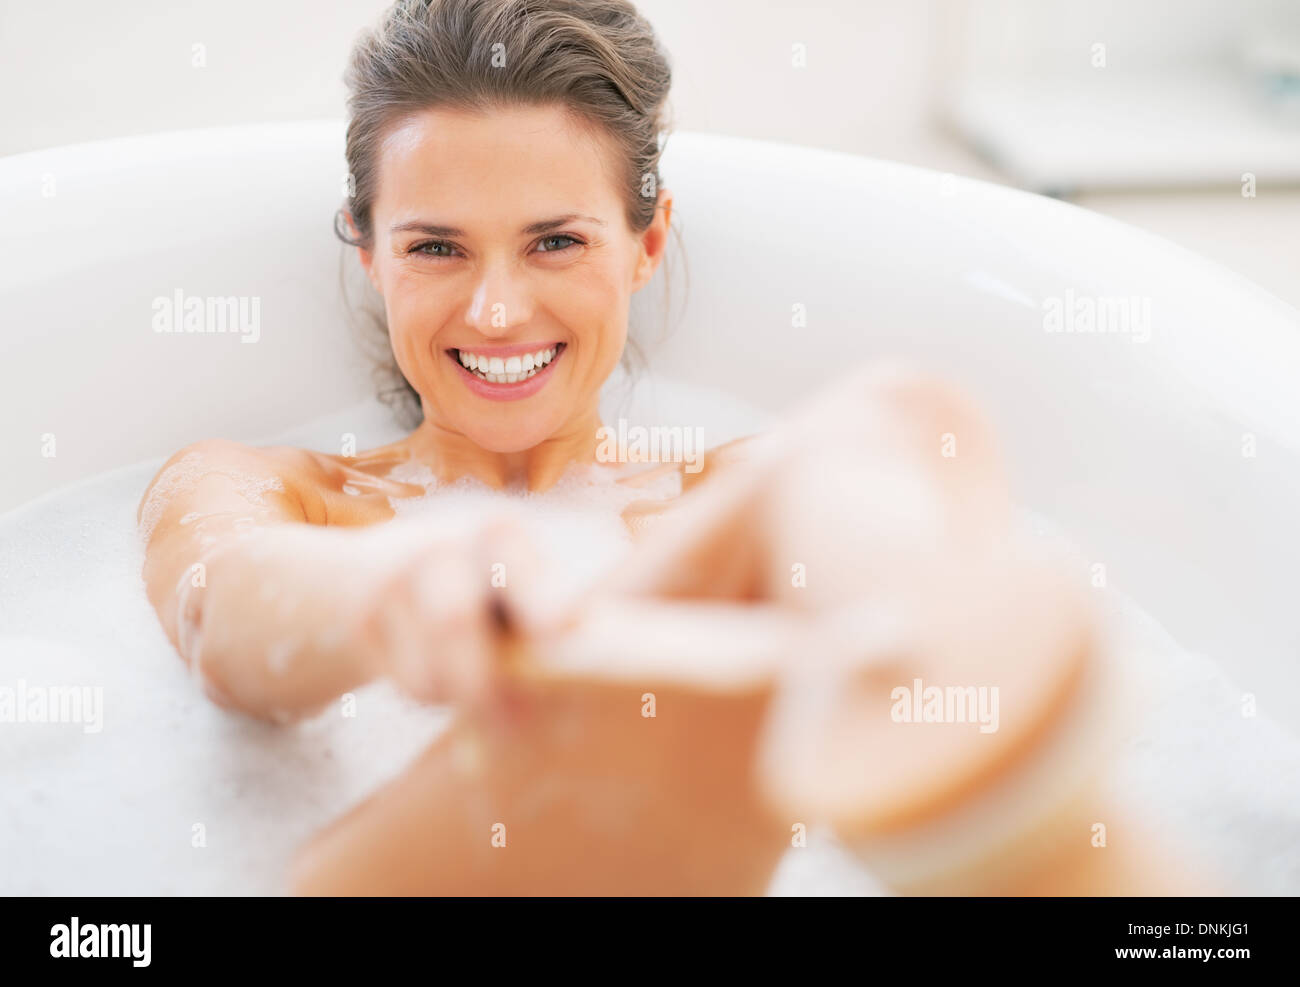 Покажи как женщины моются. Довольная женщина в ванной. С улыбкой в ванной. Женщина прикрывается руками в ванной. Девушка прикрывается руками в ванне.